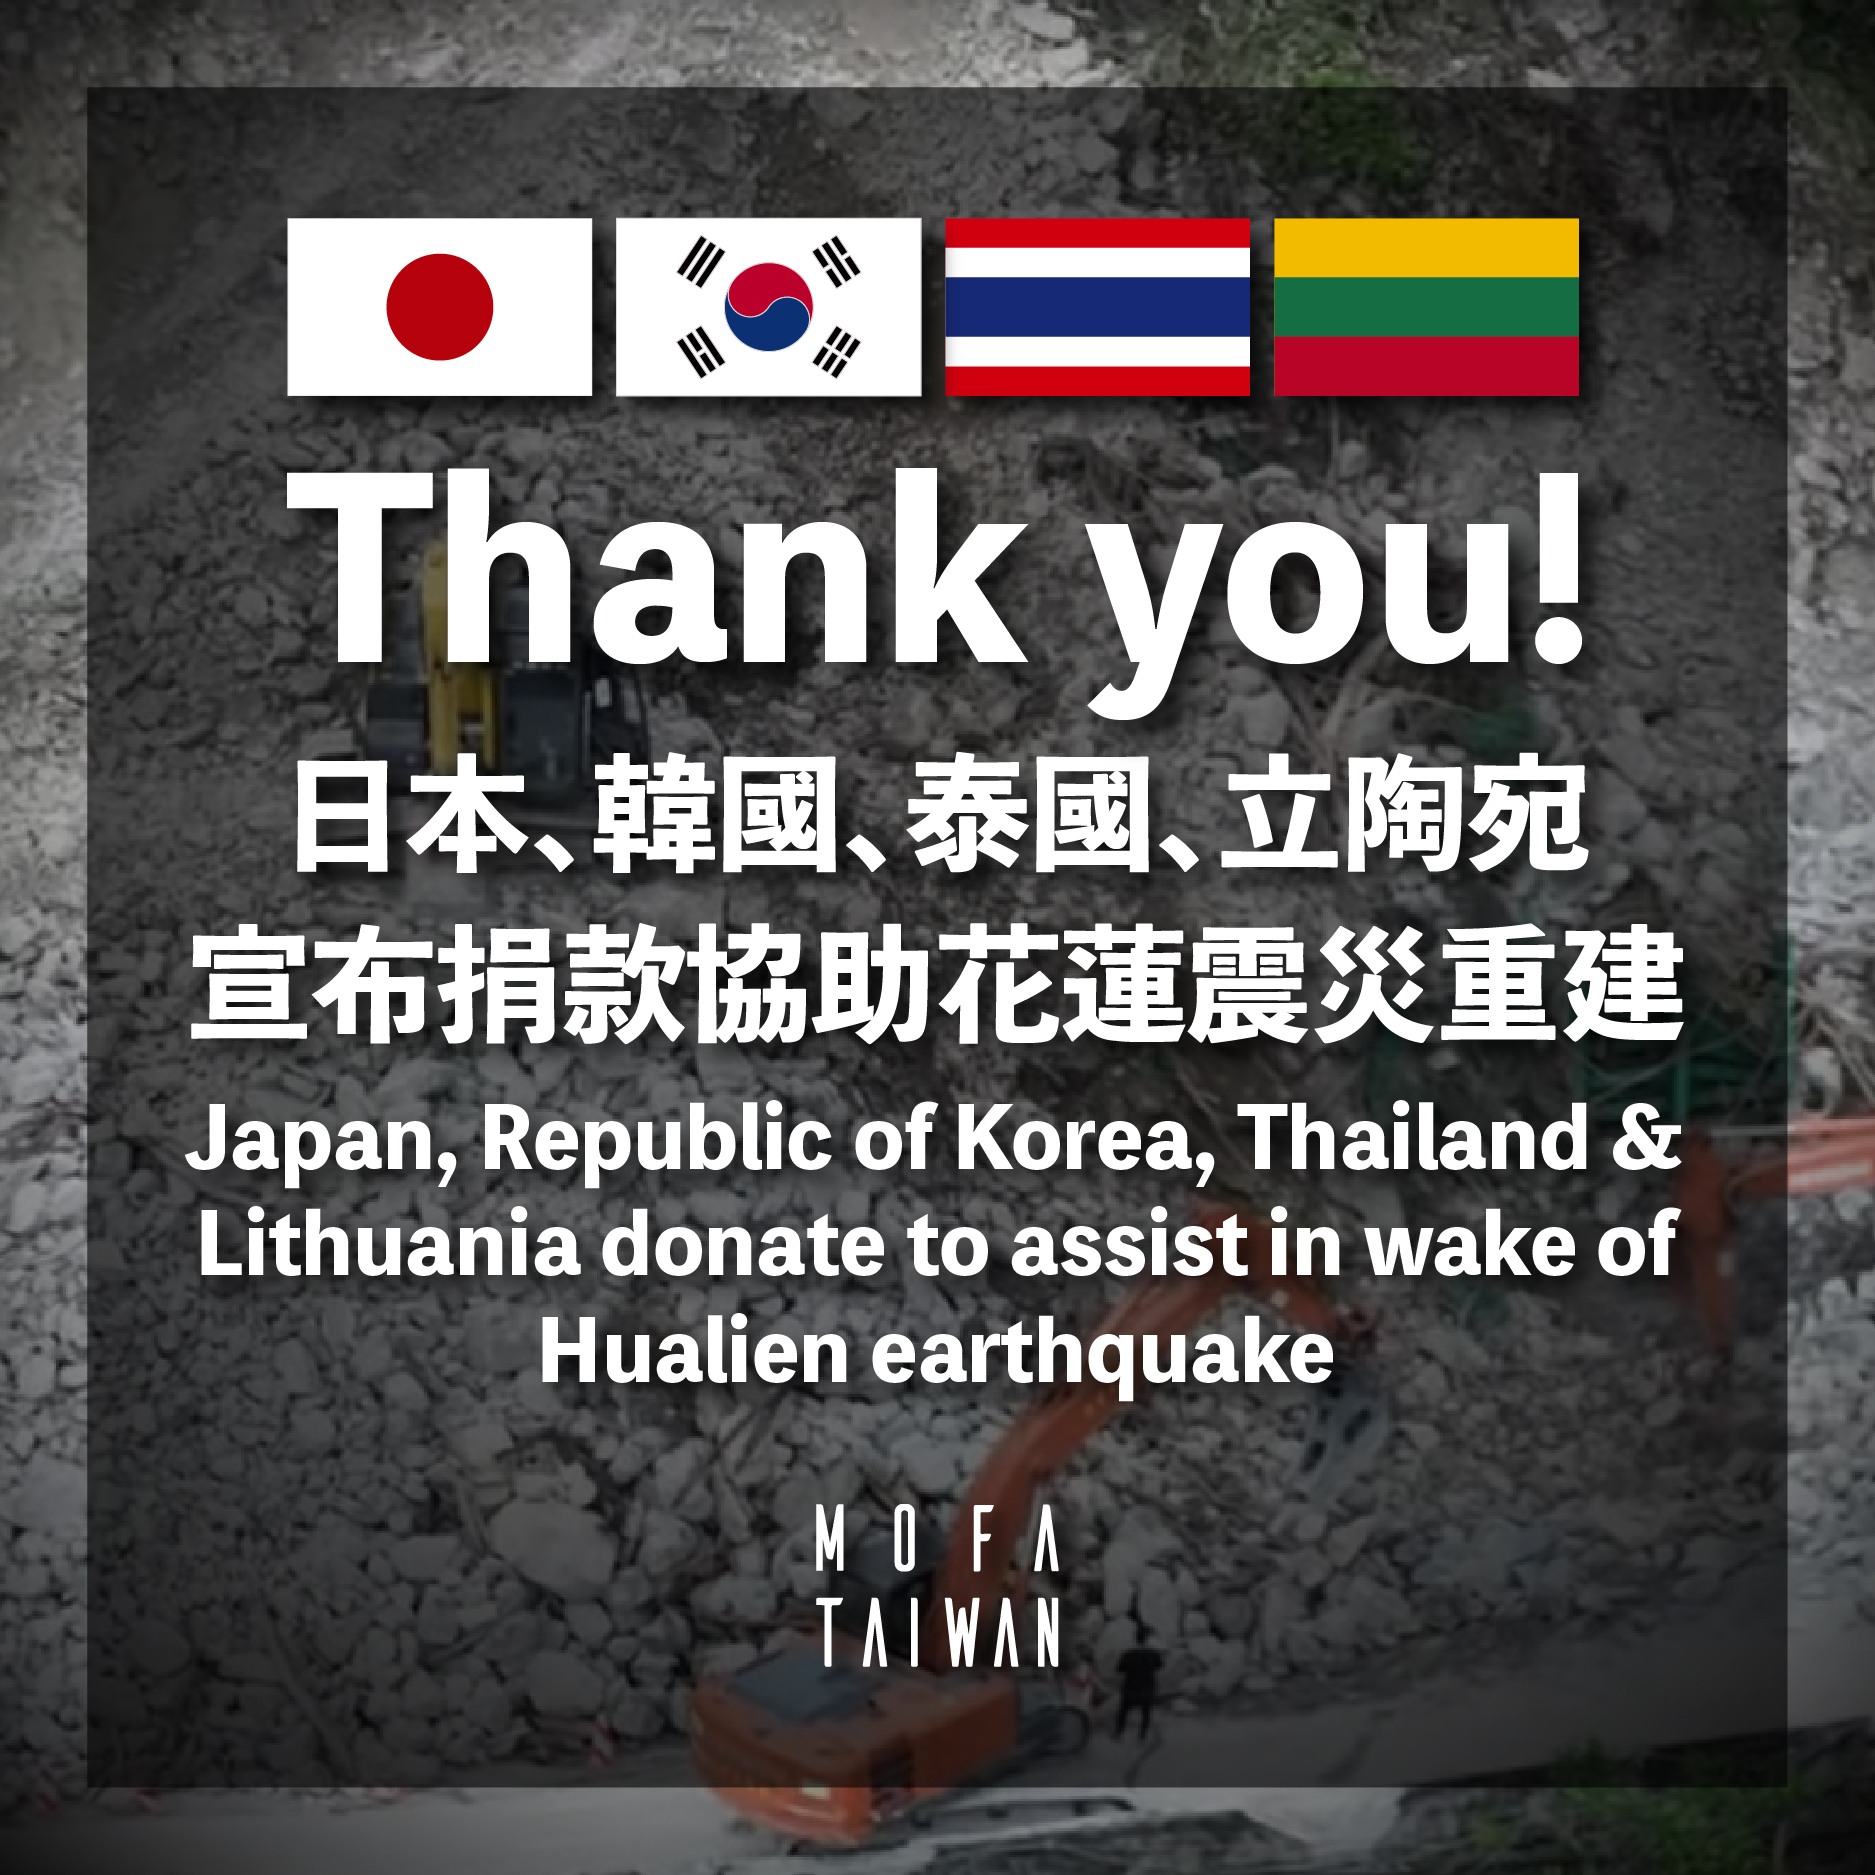 ไต้หวัน ซาบซึ้งใจ ขอบคุณรัฐบาลไทย บริจาค 1 ล้าน ช่วยภารกิจฟื้นฟูหลังแผ่นดินไหว